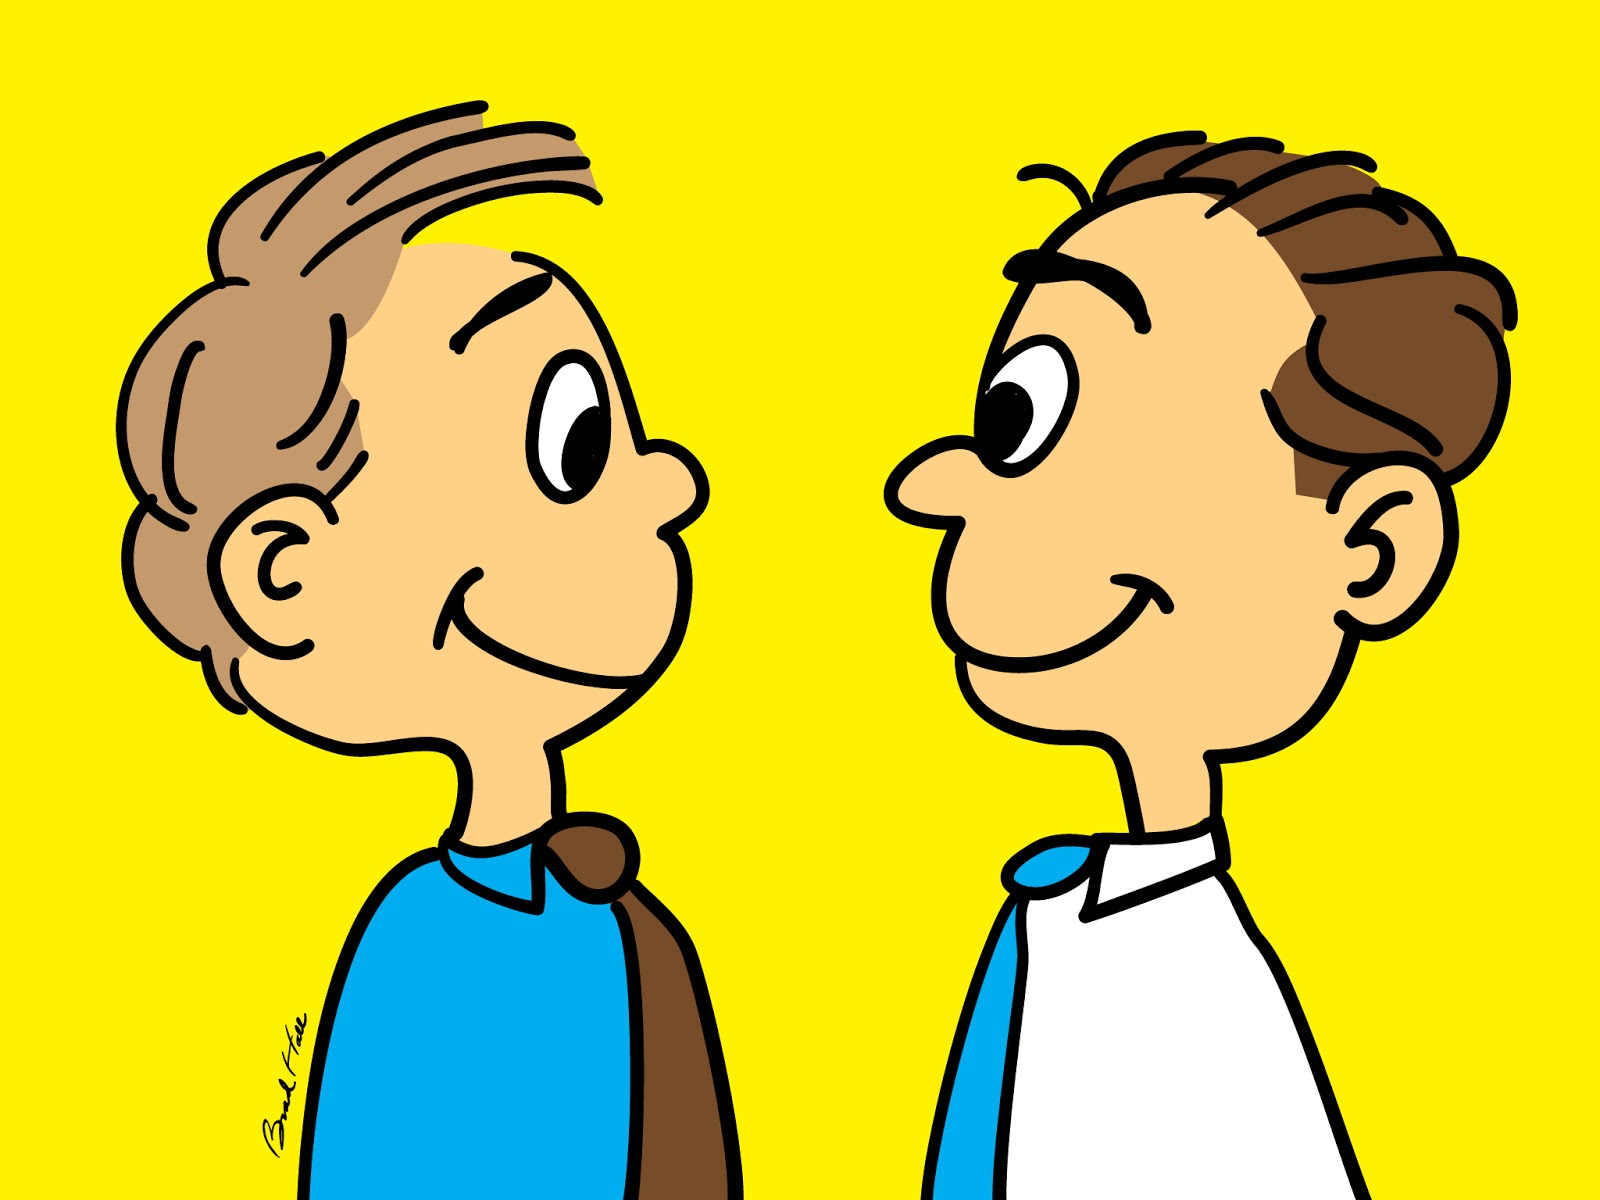 Cartoon_men_facing_each_other.jpg (1600×1200)